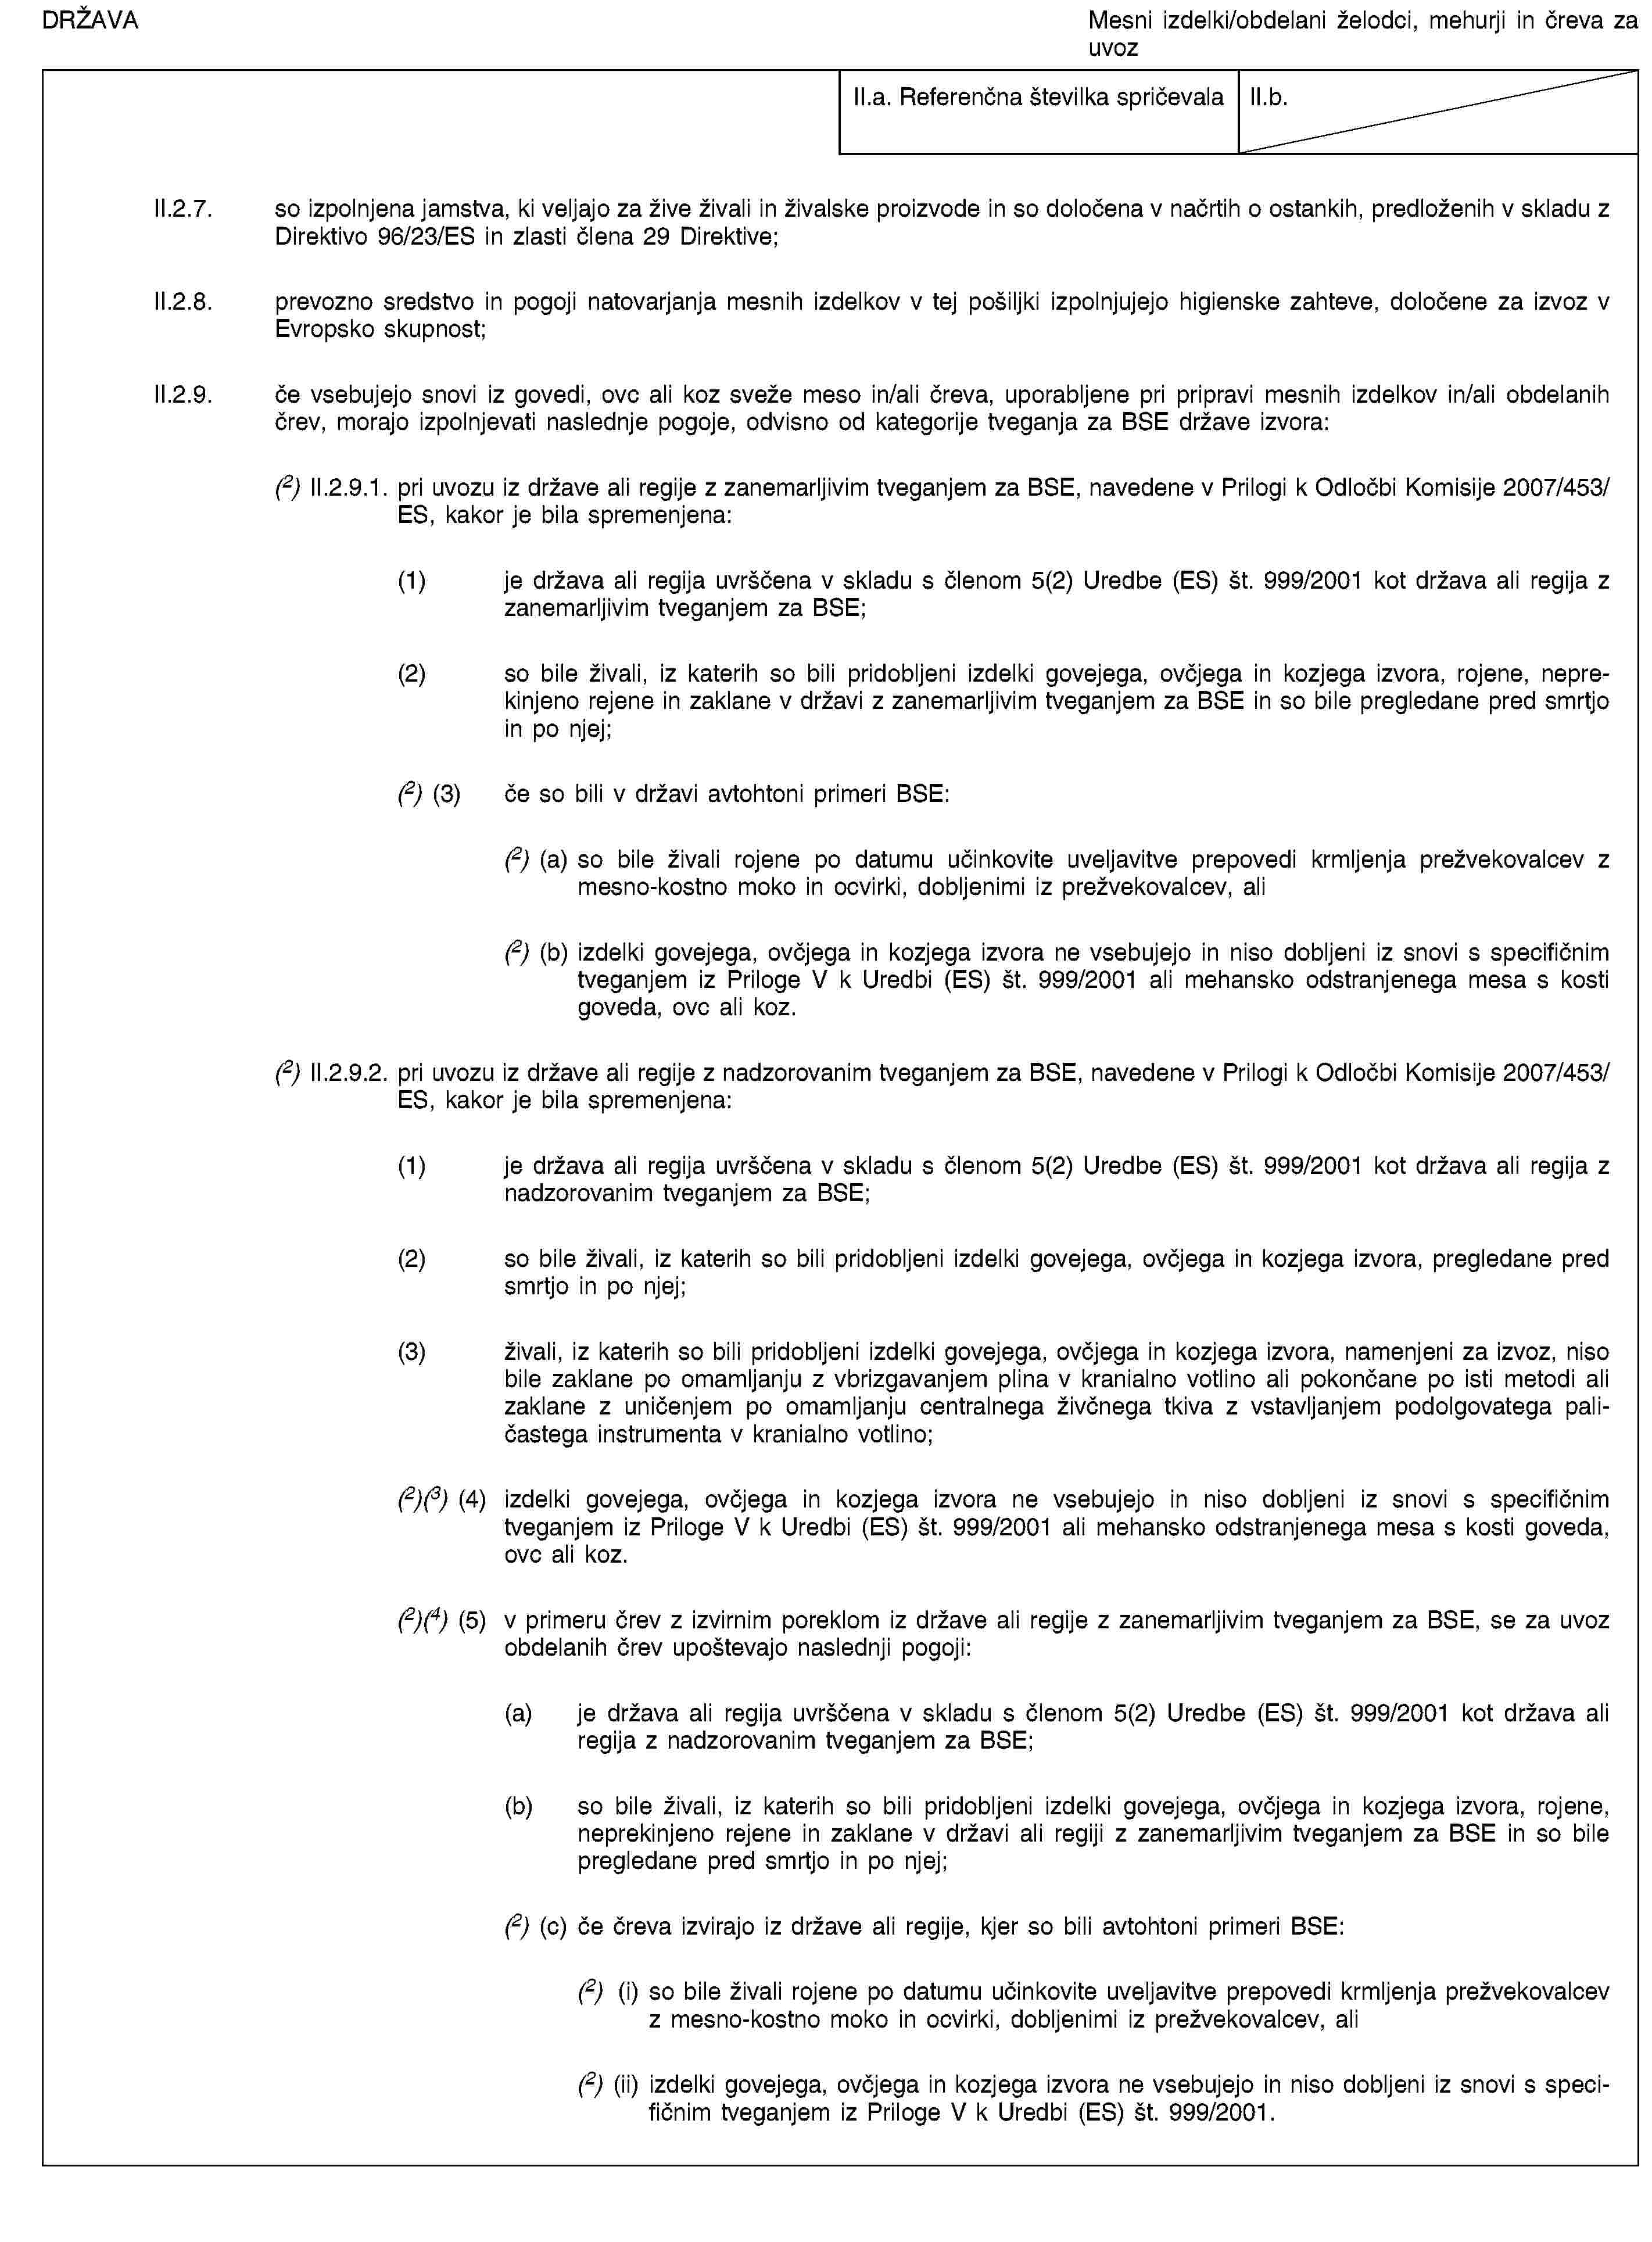 DRŽAVAMesni izdelki/obdelani želodci, mehurji in čreva za uvozII.a. Referenčna številka spričevalaII.b.II.2.7. so izpolnjena jamstva, ki veljajo za žive živali in živalske proizvode in so določena v načrtih o ostankih, predloženih v skladu z Direktivo 96/23/ES in zlasti člena 29 Direktive;II.2.8. prevozno sredstvo in pogoji natovarjanja mesnih izdelkov v tej pošiljki izpolnjujejo higienske zahteve, določene za izvoz v Evropsko skupnost;II.2.9. če vsebujejo snovi iz govedi, ovc ali koz sveže meso in/ali čreva, uporabljene pri pripravi mesnih izdelkov in/ali obdelanih črev, morajo izpolnjevati naslednje pogoje, odvisno od kategorije tveganja za BSE države izvora:(2) II.2.9.1. pri uvozu iz države ali regije z zanemarljivim tveganjem za BSE, navedene v Prilogi k Odločbi Komisije 2007/453/ES, kakor je bila spremenjena:(1) je država ali regija uvrščena v skladu s členom 5(2) Uredbe (ES) št. 999/2001 kot država ali regija z zanemarljivim tveganjem za BSE;(2) so bile živali, iz katerih so bili pridobljeni izdelki govejega, ovčjega in kozjega izvora, rojene, neprekinjeno rejene in zaklane v državi z zanemarljivim tveganjem za BSE in so bile pregledane pred smrtjo in po njej;(2) (3) če so bili v državi avtohtoni primeri BSE:(2) (a) so bile živali rojene po datumu učinkovite uveljavitve prepovedi krmljenja prežvekovalcev z mesno-kostno moko in ocvirki, dobljenimi iz prežvekovalcev, ali(2) (b) izdelki govejega, ovčjega in kozjega izvora ne vsebujejo in niso dobljeni iz snovi s specifičnim tveganjem iz Priloge V k Uredbi (ES) št. 999/2001 ali mehansko odstranjenega mesa s kosti goveda, ovc ali koz.(2) II.2.9.2. pri uvozu iz države ali regije z nadzorovanim tveganjem za BSE, navedene v Prilogi k Odločbi Komisije 2007/453/ES, kakor je bila spremenjena:(1) je država ali regija uvrščena v skladu s členom 5(2) Uredbe (ES) št. 999/2001 kot država ali regija z nadzorovanim tveganjem za BSE;(2) so bile živali, iz katerih so bili pridobljeni izdelki govejega, ovčjega in kozjega izvora, pregledane pred smrtjo in po njej;(3) živali, iz katerih so bili pridobljeni izdelki govejega, ovčjega in kozjega izvora, namenjeni za izvoz, niso bile zaklane po omamljanju z vbrizgavanjem plina v kranialno votlino ali pokončane po isti metodi ali zaklane z uničenjem po omamljanju centralnega živčnega tkiva z vstavljanjem podolgovatega paličastega instrumenta v kranialno votlino;(2)(3) (4) izdelki govejega, ovčjega in kozjega izvora ne vsebujejo in niso dobljeni iz snovi s specifičnim tveganjem iz Priloge V k Uredbi (ES) št. 999/2001 ali mehansko odstranjenega mesa s kosti goveda, ovc ali koz.(2)(4) (5) v primeru črev z izvirnim poreklom iz države ali regije z zanemarljivim tveganjem za BSE, se za uvoz obdelanih črev upoštevajo naslednji pogoji:(a) je država ali regija uvrščena v skladu s členom 5(2) Uredbe (ES) št. 999/2001 kot država ali regija z nadzorovanim tveganjem za BSE;(b) so bile živali, iz katerih so bili pridobljeni izdelki govejega, ovčjega in kozjega izvora, rojene, neprekinjeno rejene in zaklane v državi ali regiji z zanemarljivim tveganjem za BSE in so bile pregledane pred smrtjo in po njej;(2) (c) če čreva izvirajo iz države ali regije, kjer so bili avtohtoni primeri BSE:(2) (i) so bile živali rojene po datumu učinkovite uveljavitve prepovedi krmljenja prežvekovalcev z mesno-kostno moko in ocvirki, dobljenimi iz prežvekovalcev, ali(2) (ii) izdelki govejega, ovčjega in kozjega izvora ne vsebujejo in niso dobljeni iz snovi s specifičnim tveganjem iz Priloge V k Uredbi (ES) št. 999/2001.